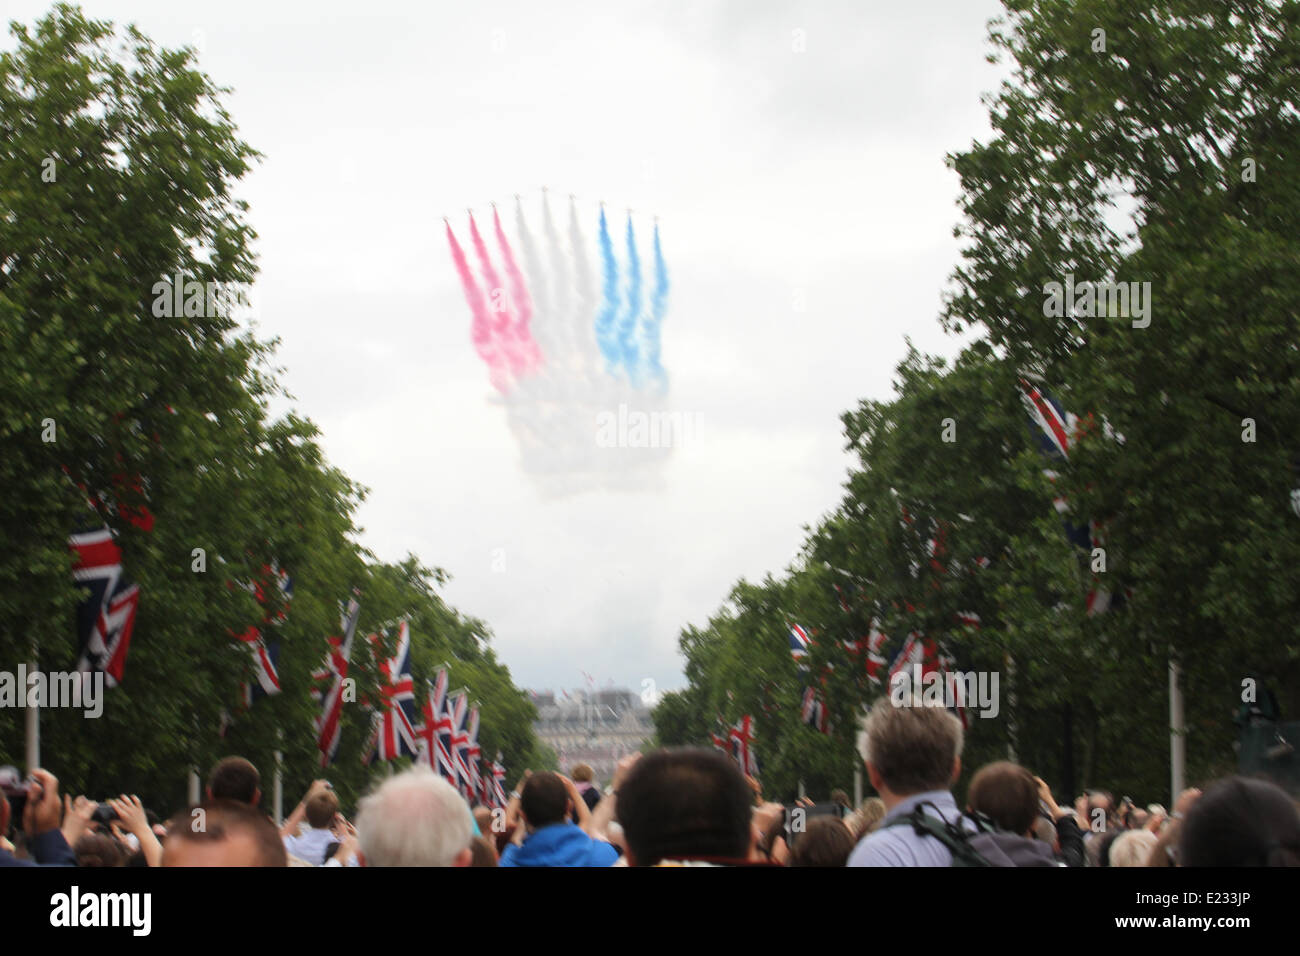 Londres, Reino Unido. El 14 de junio de 2014. El desfile Trooping Colour Display flechas rojas. Crédito: David mbiyu/Alamy Live News Foto de stock